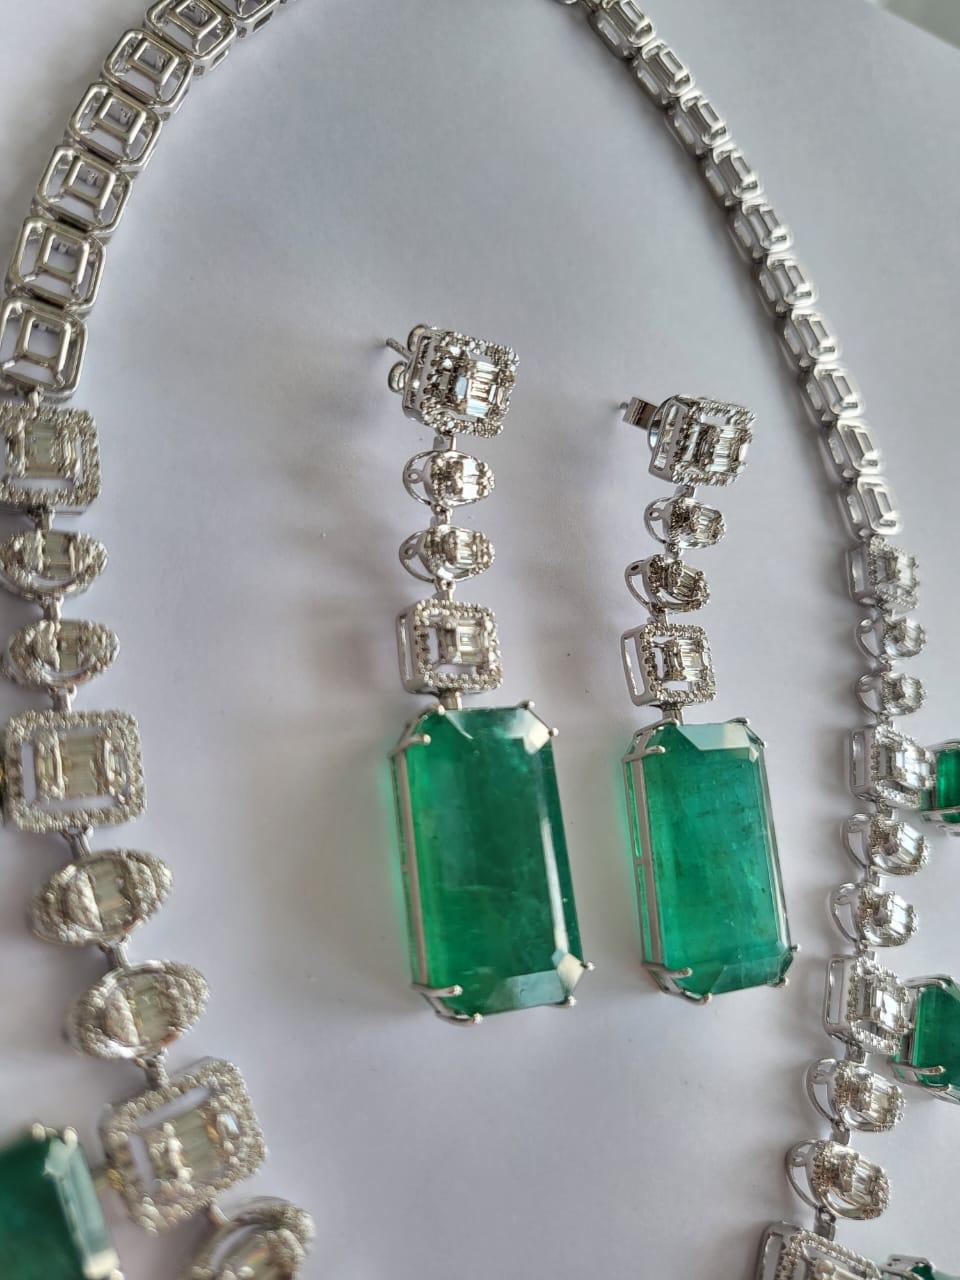 Eine sehr schöne und einzigartige Smaragd-Halskette in 18K Weißgold und Diamanten. Das Gewicht der Smaragde in diesem Collier beträgt 54,94 Karat. Das Gewicht der Smaragde in den Ohrringen beträgt 46,43 Karat. Die Smaragde sind völlig natürlich,